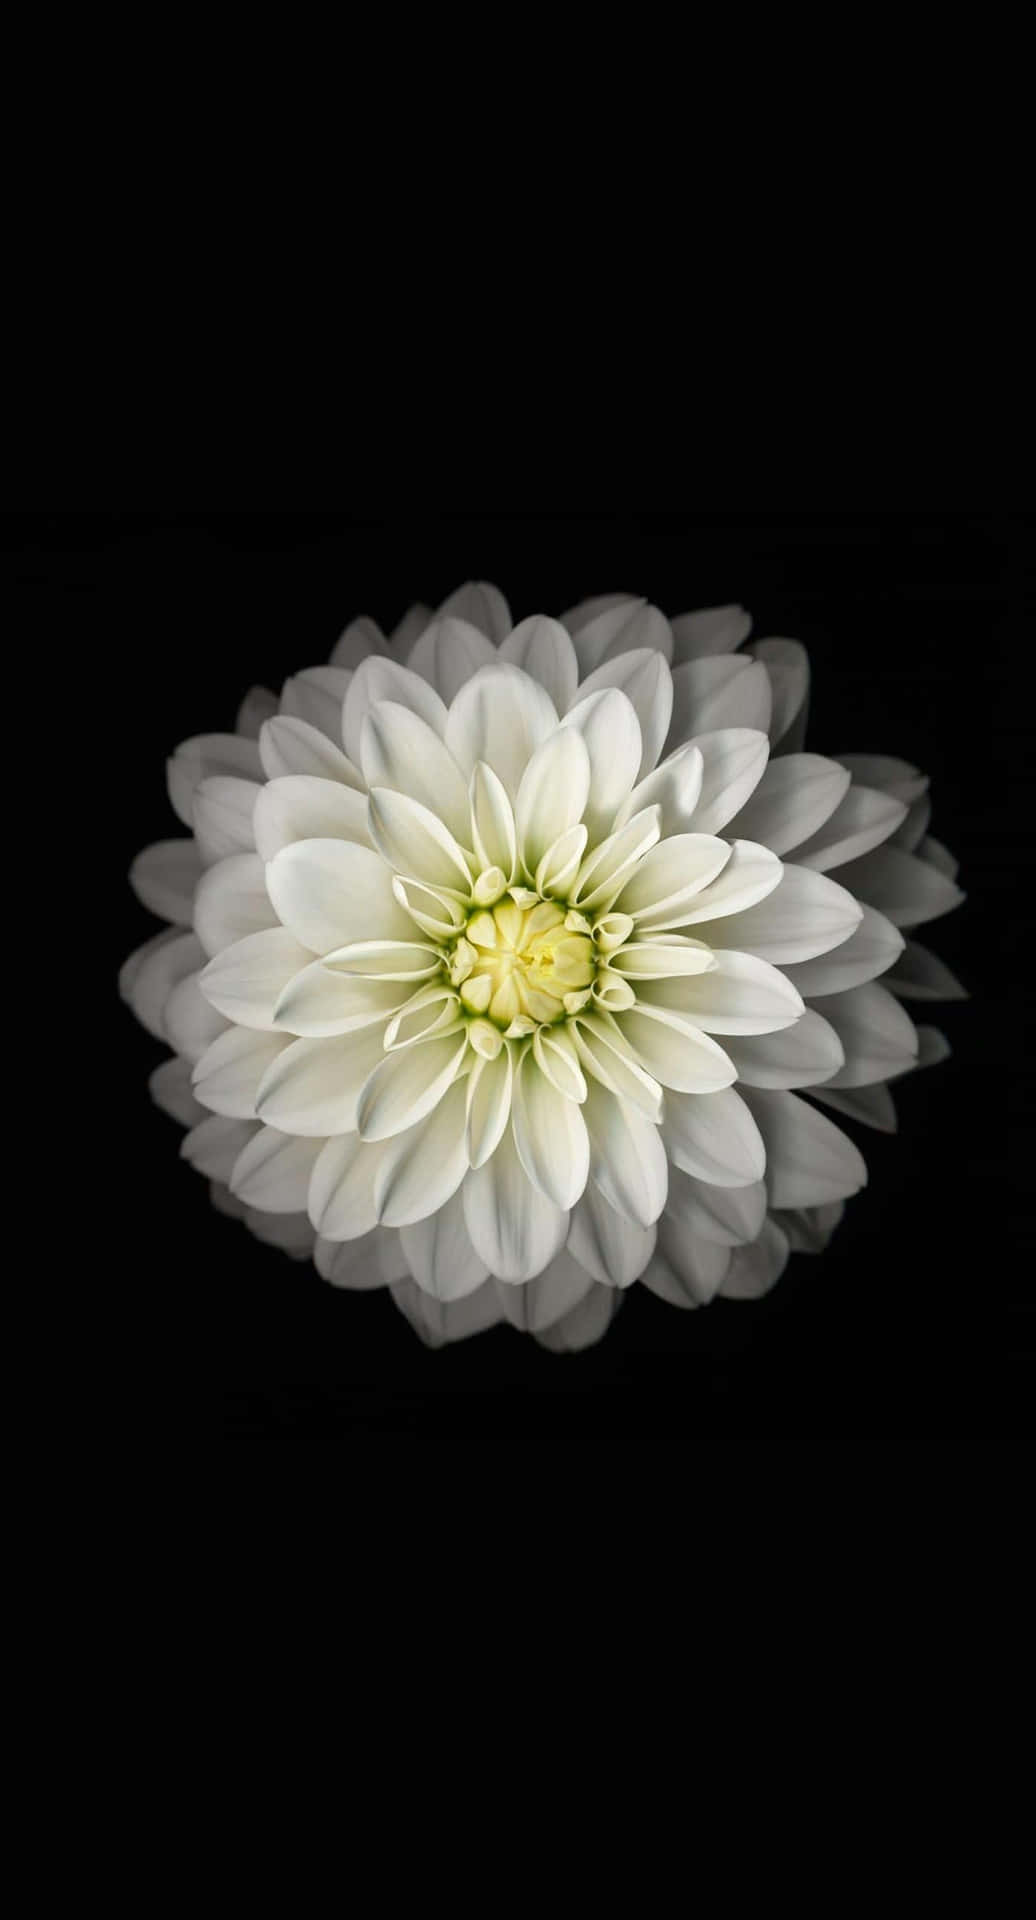 Fantastiskarosa Blommor Pryder Denna Iphone-bakgrundsbild. Wallpaper